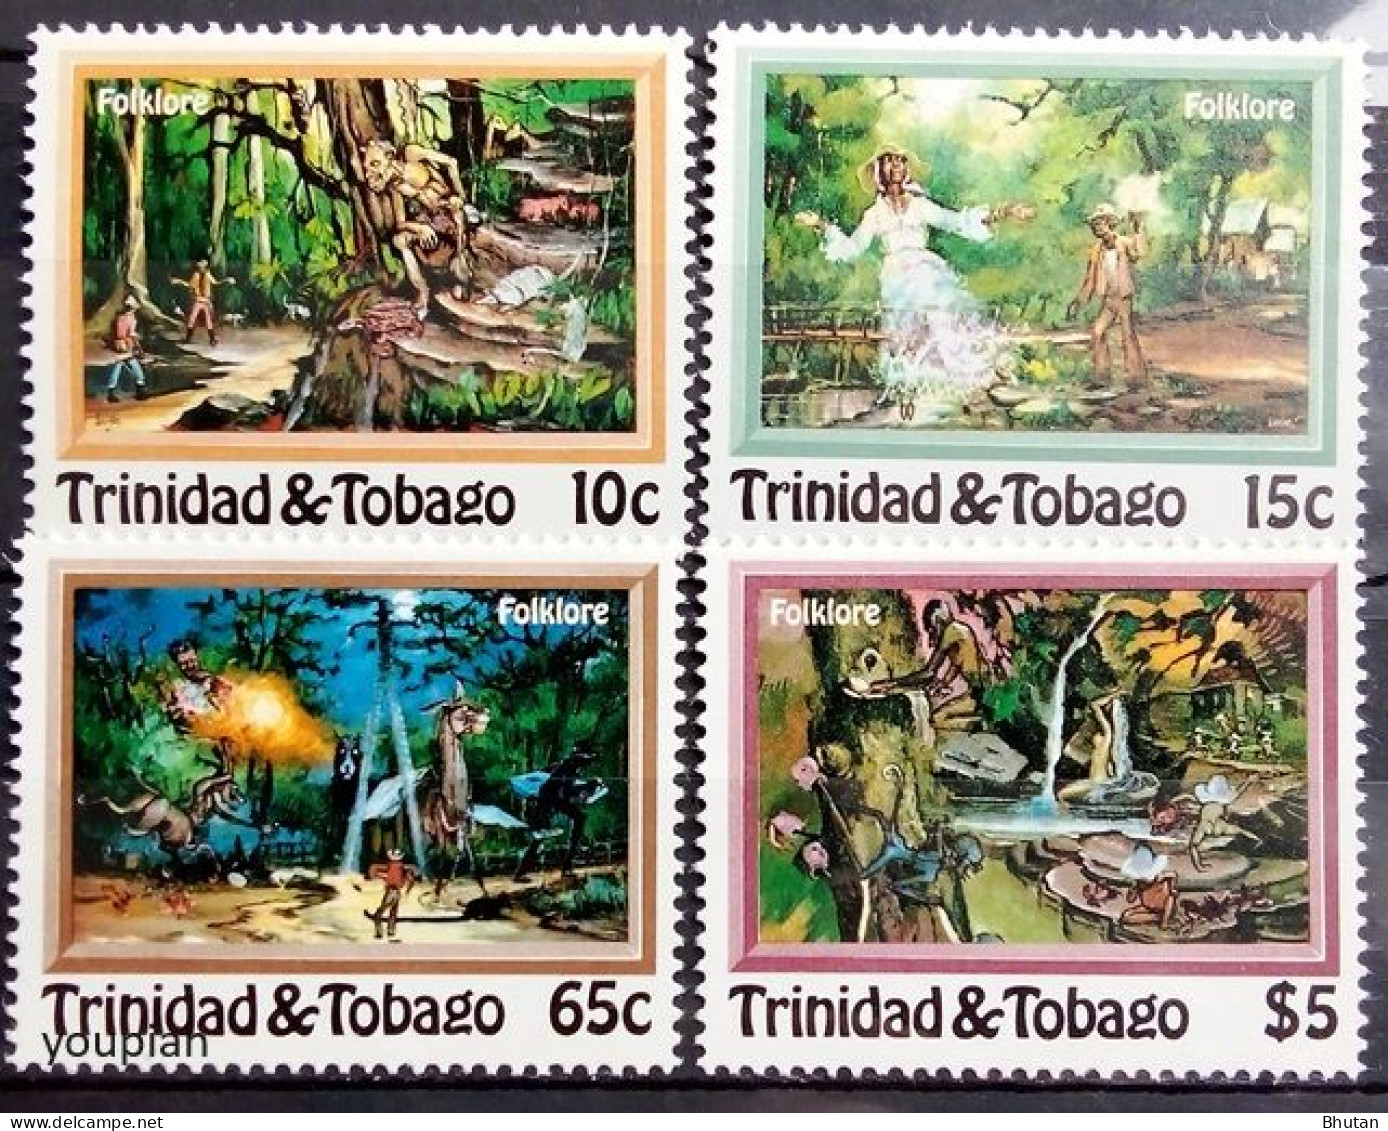 Trinidad And Tobago 1982, Folklore, MNH Stamps Set - Trinidad & Tobago (1962-...)